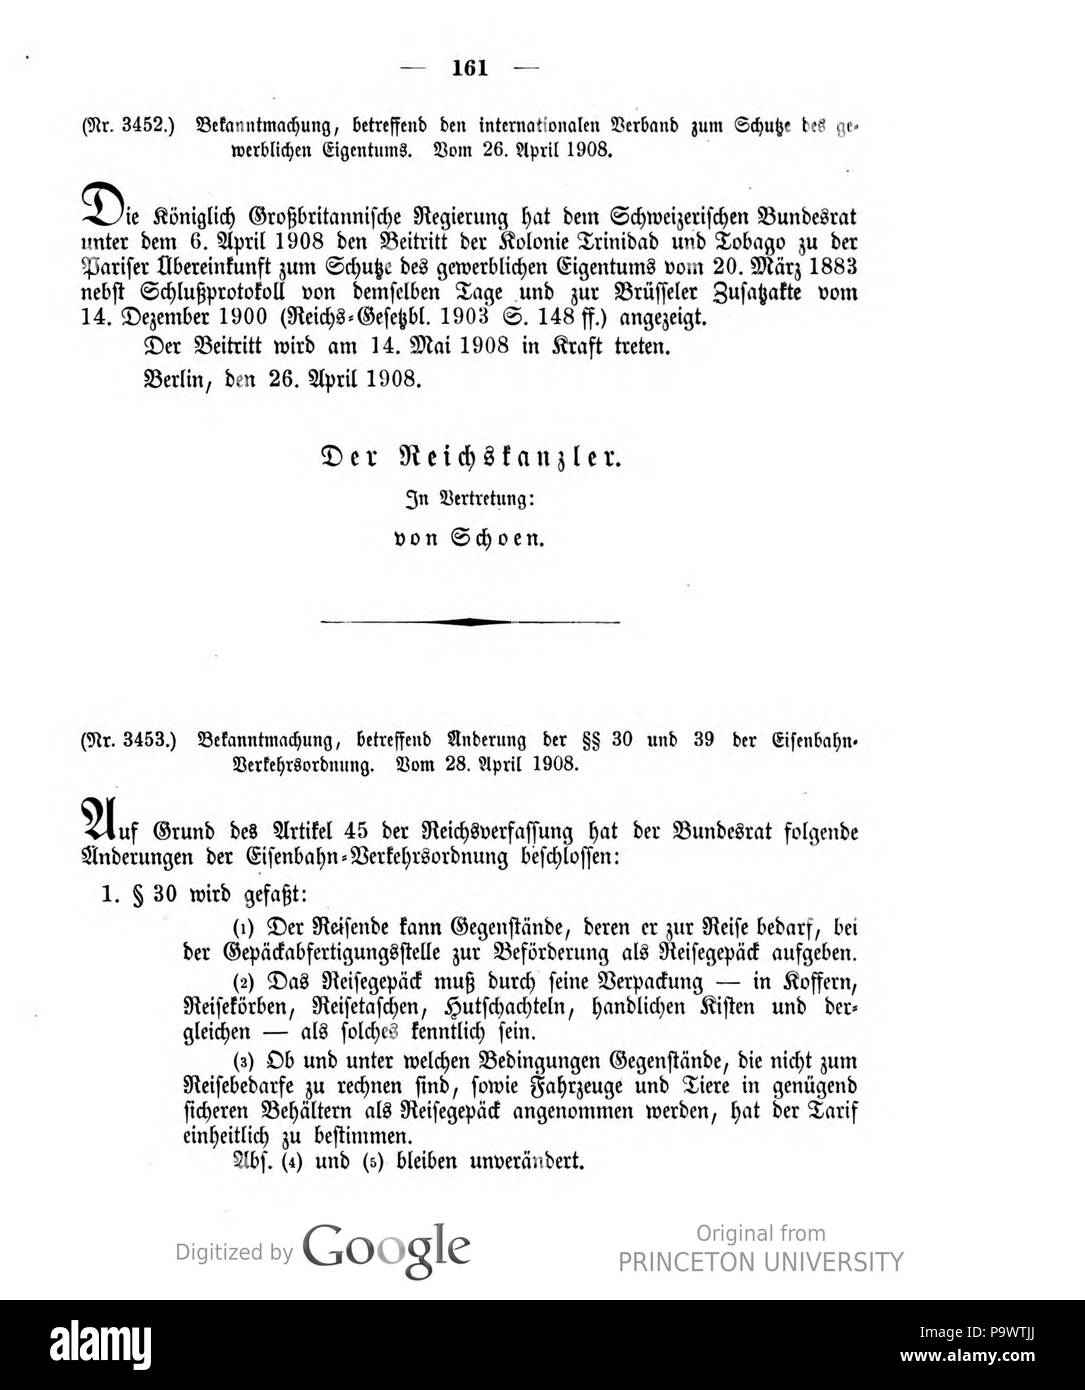 427 Deutsches Reichsgesetzblatt 1908 019 161 Stock Photo